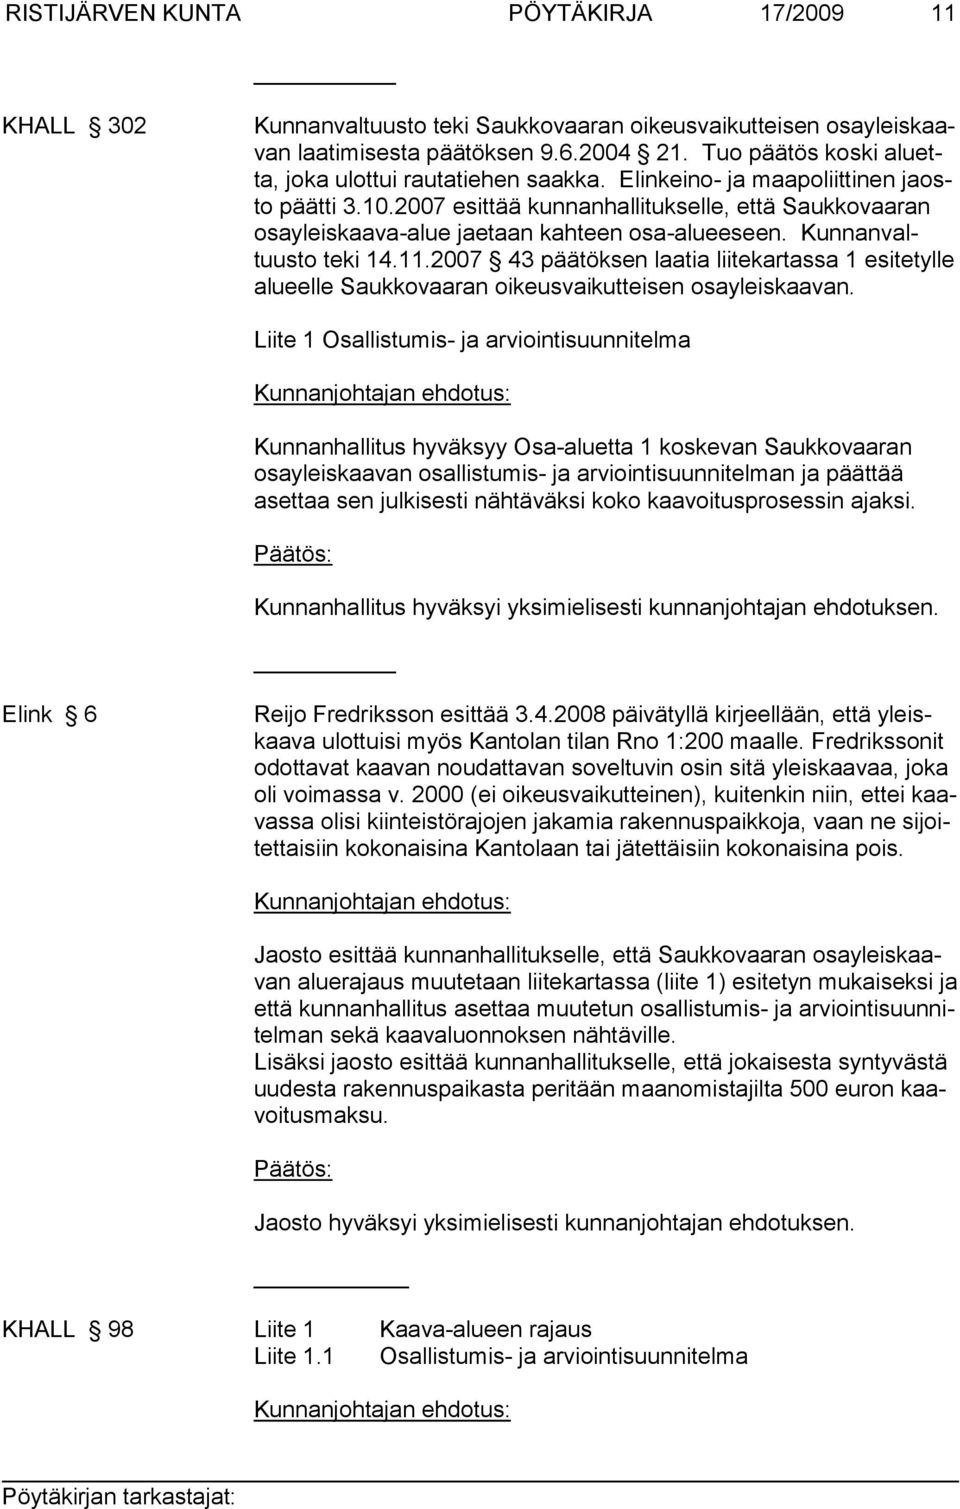 2007 esittää kunnanhallitukselle, että Saukkovaaran osayleiskaava-alue jaetaan kahteen osa-alueeseen. Kunnanvaltuusto teki 14.11.